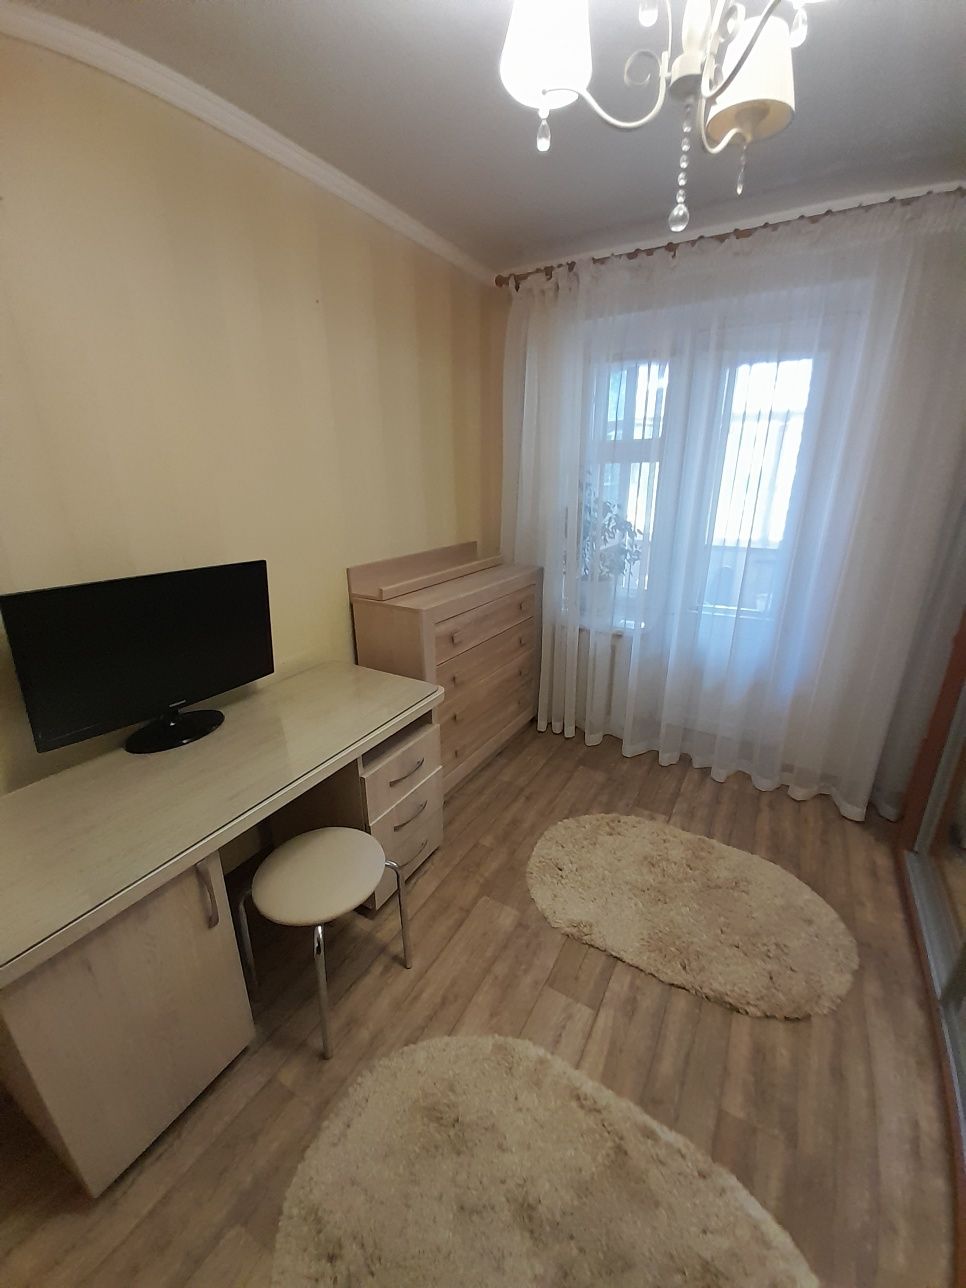 3 комнатная квартира киевского проекта на 2 этаже